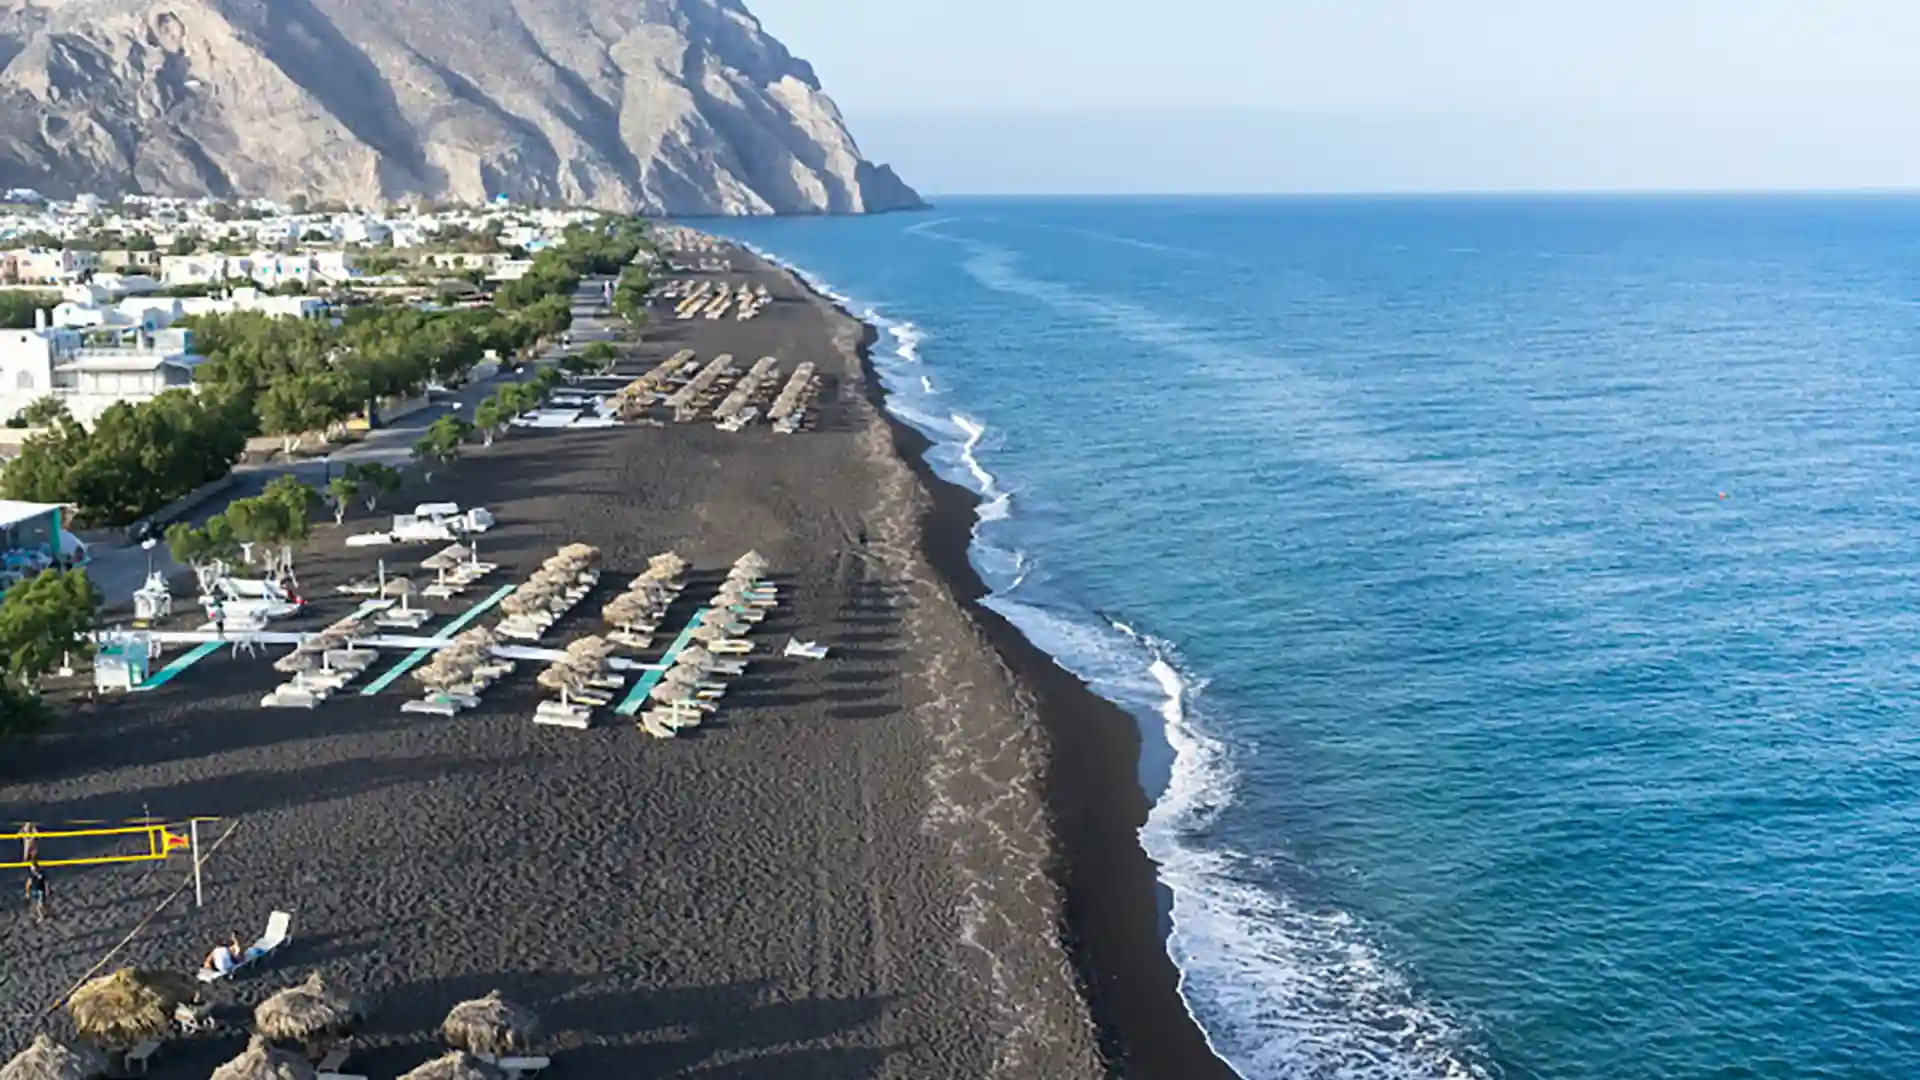 View of Perissa Beach in the Mediterranean, where black sand meets bright blue ocean water.